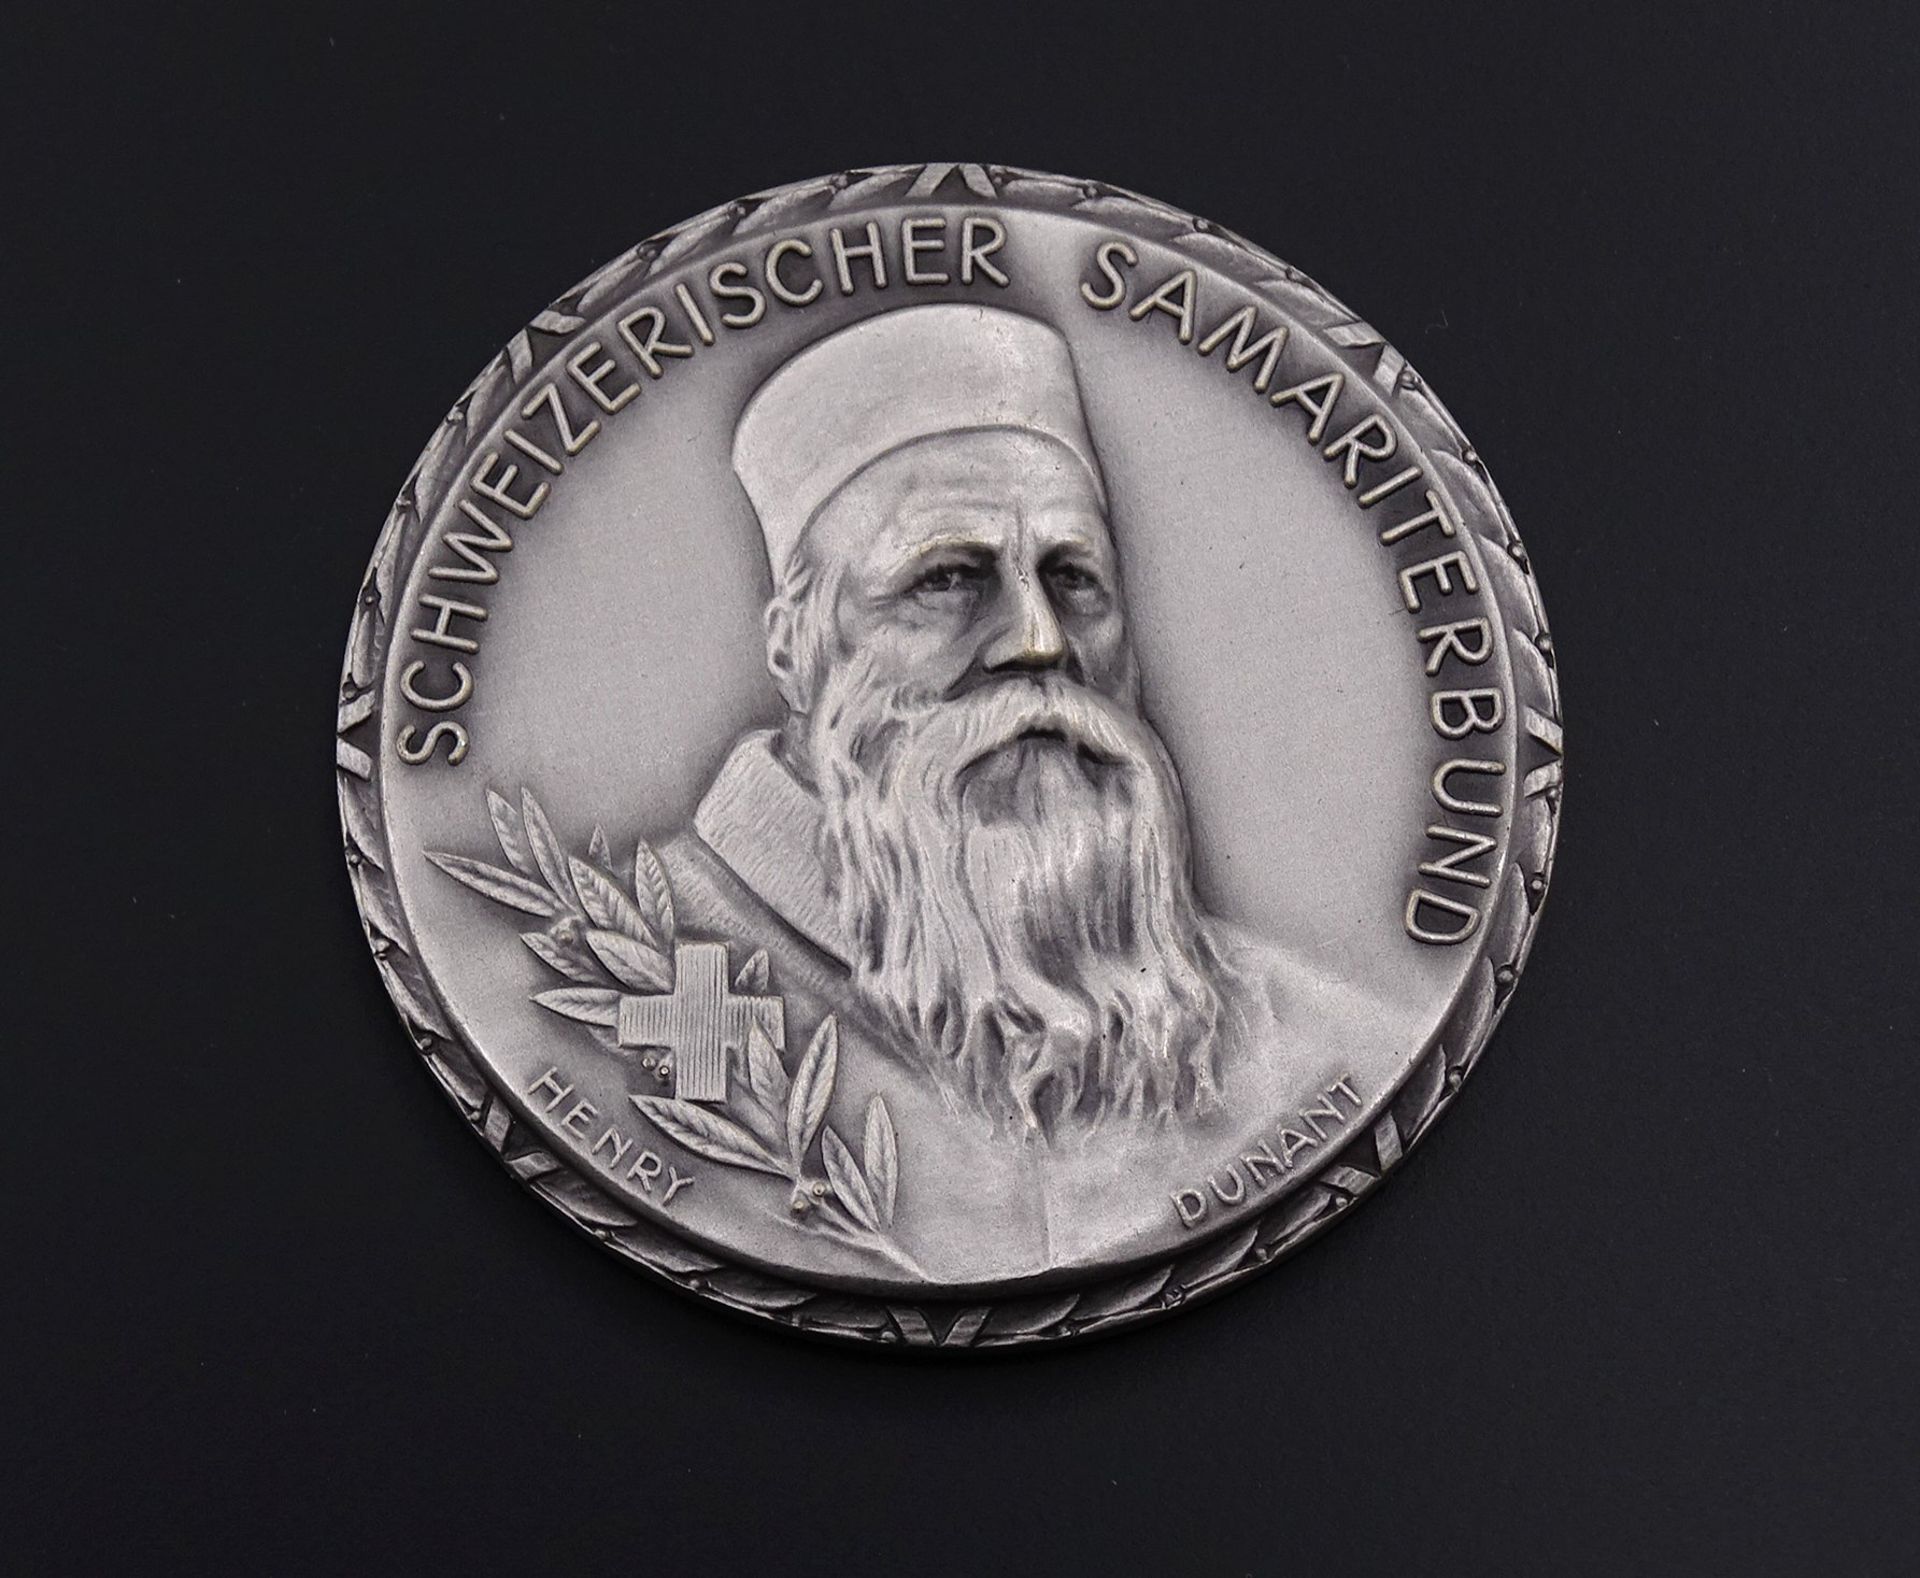 800er Silber Medaille, "Für verdienstvolle Arbeit im Samariterwesen", Namensgravur und Datierung, D